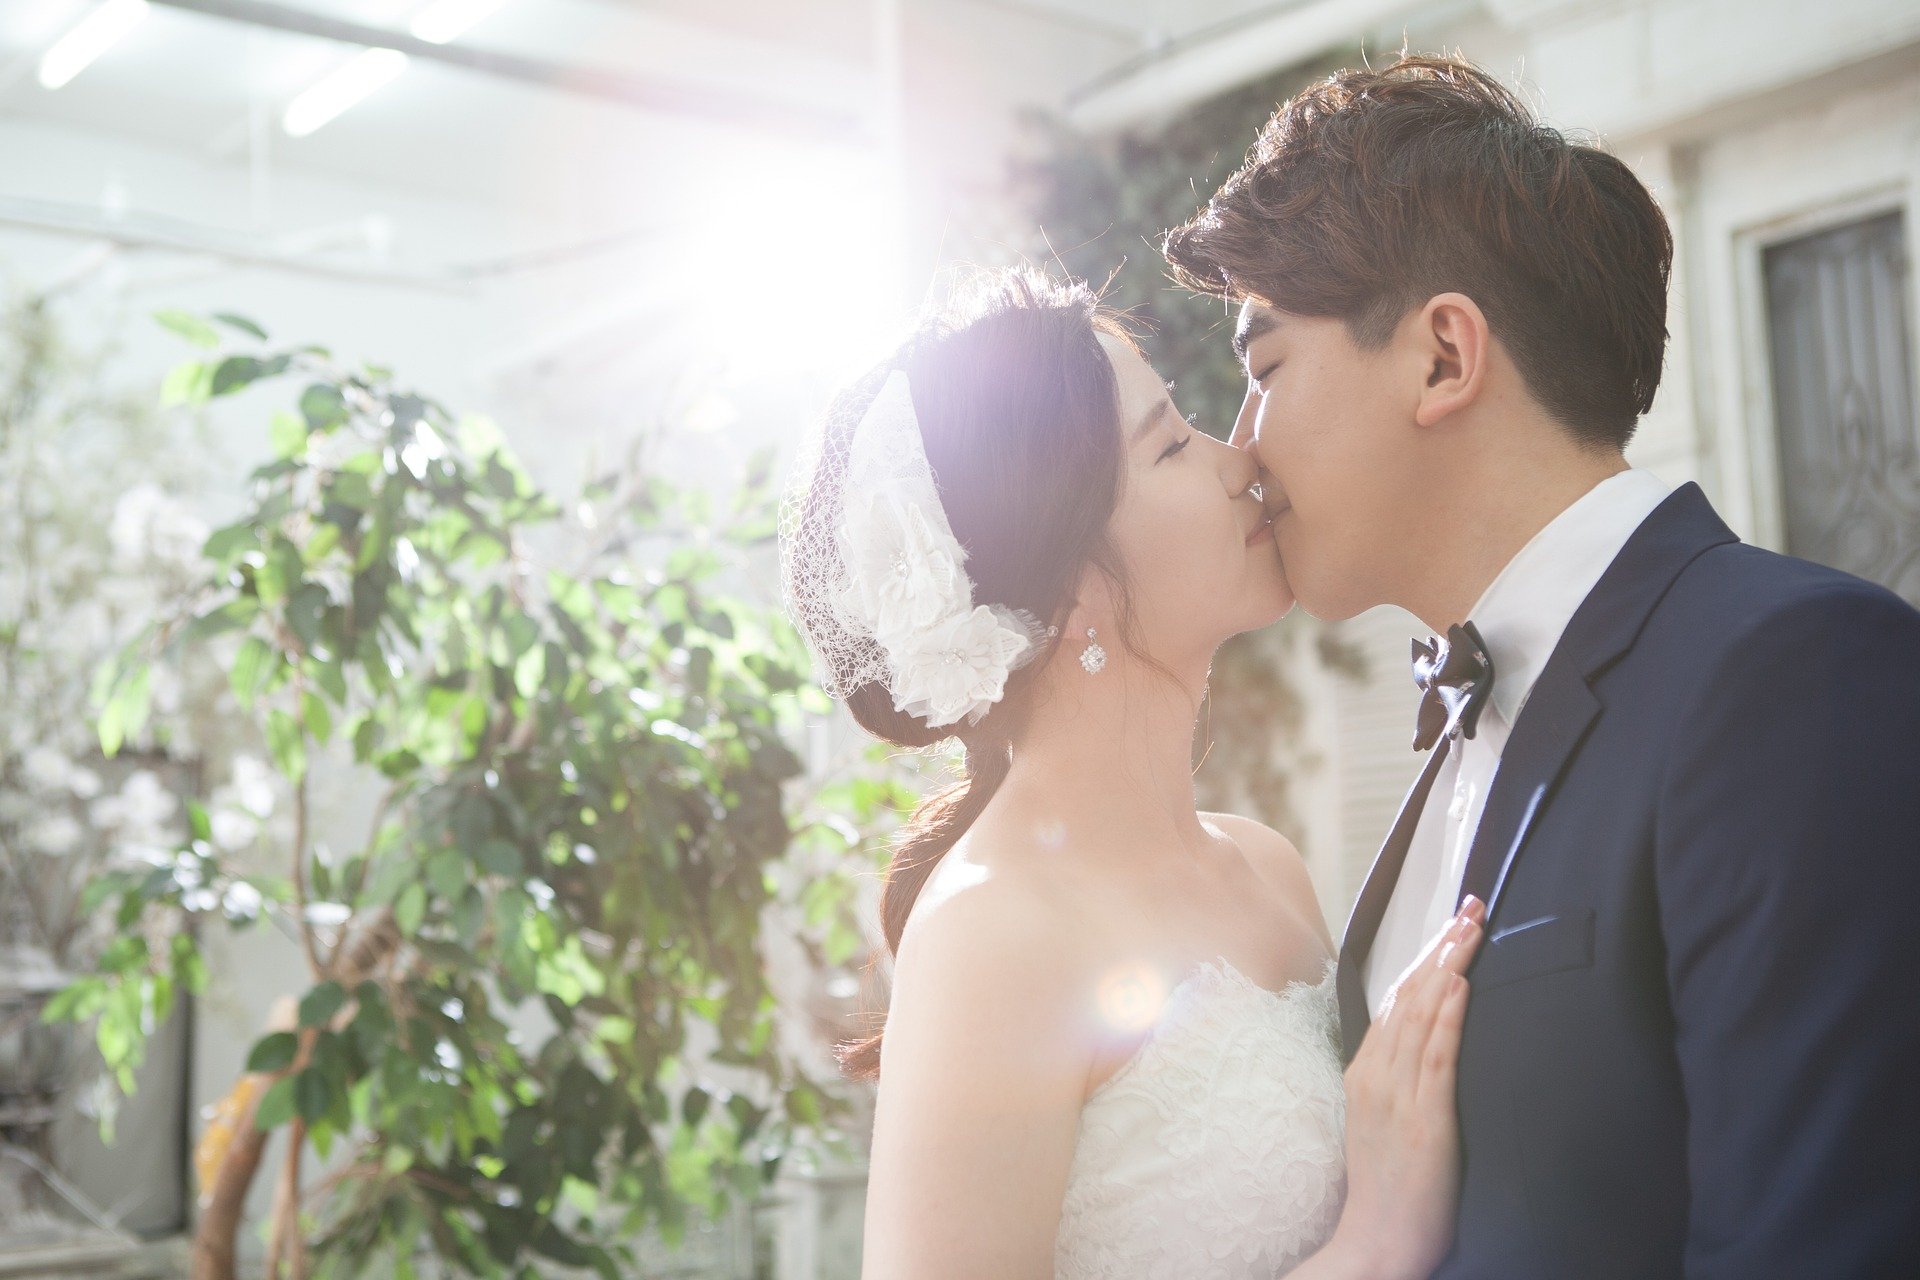 Wedding couple kissing |  Photo: Pixabay